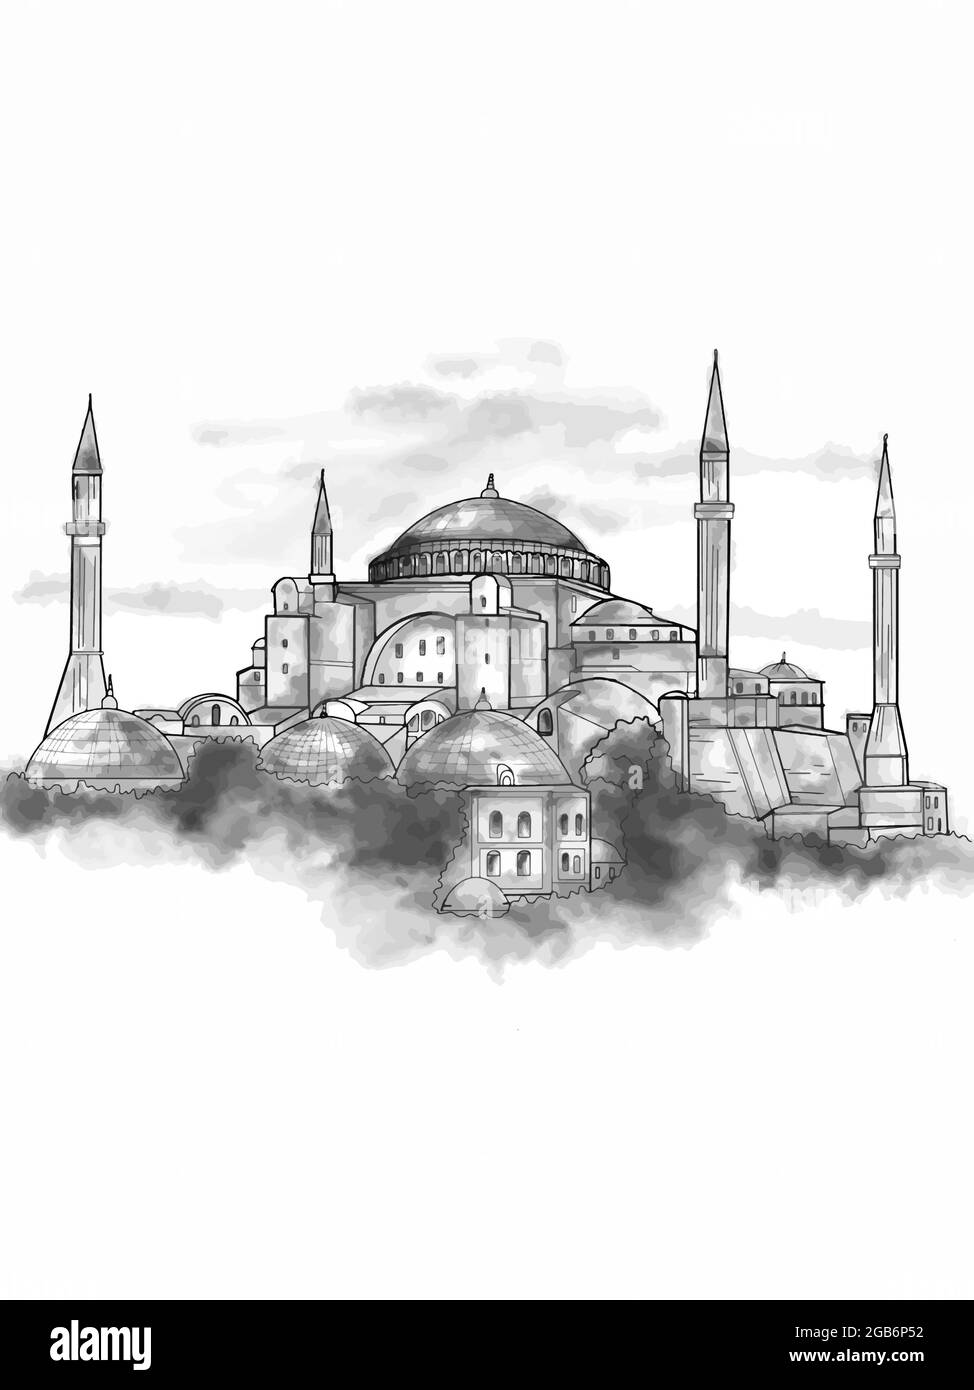 Le musée Sainte-Sophie - Ayasofya en Turquie, illustration et aquarelle de texte Banque D'Images